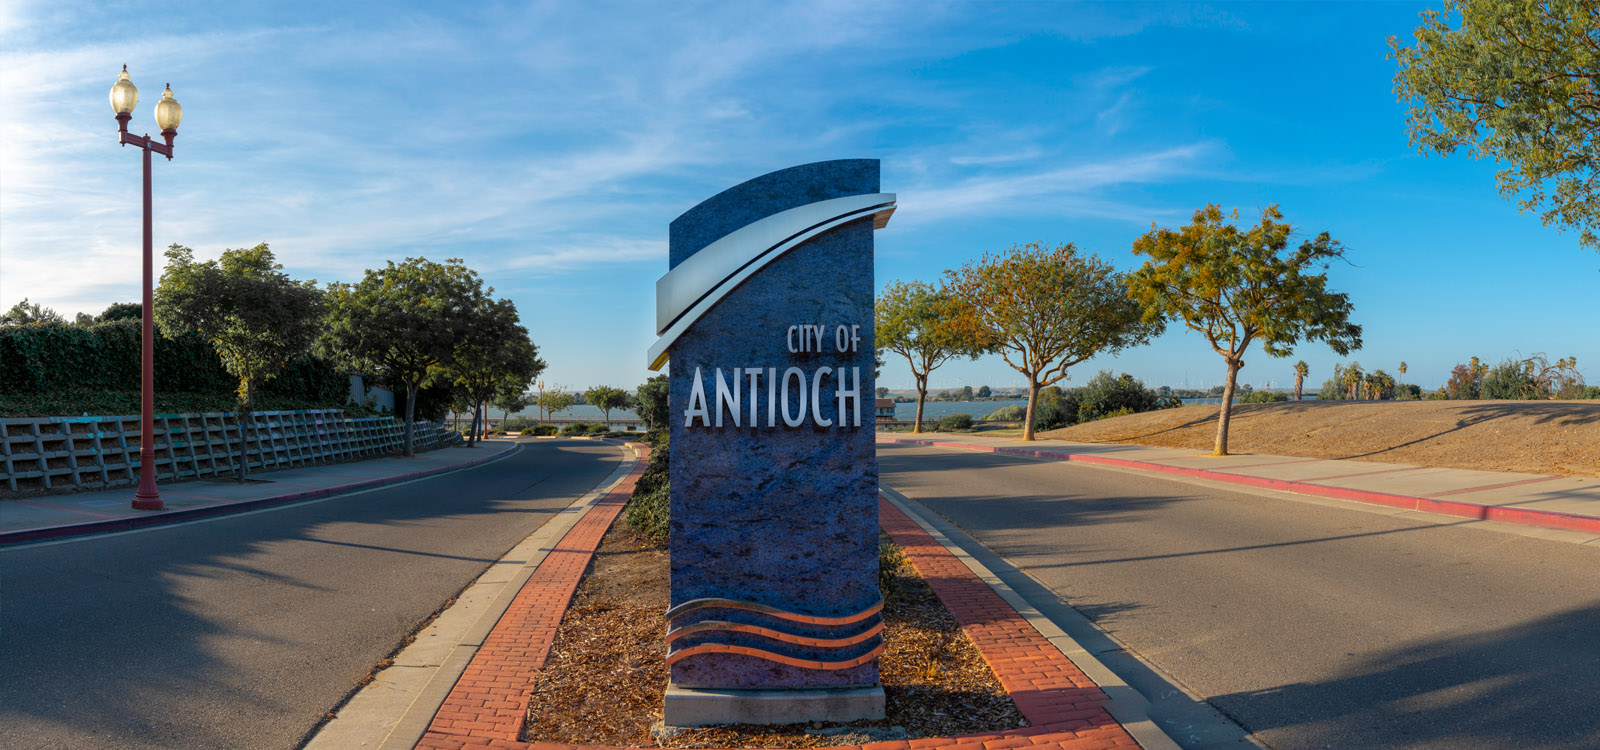 Antioch ca